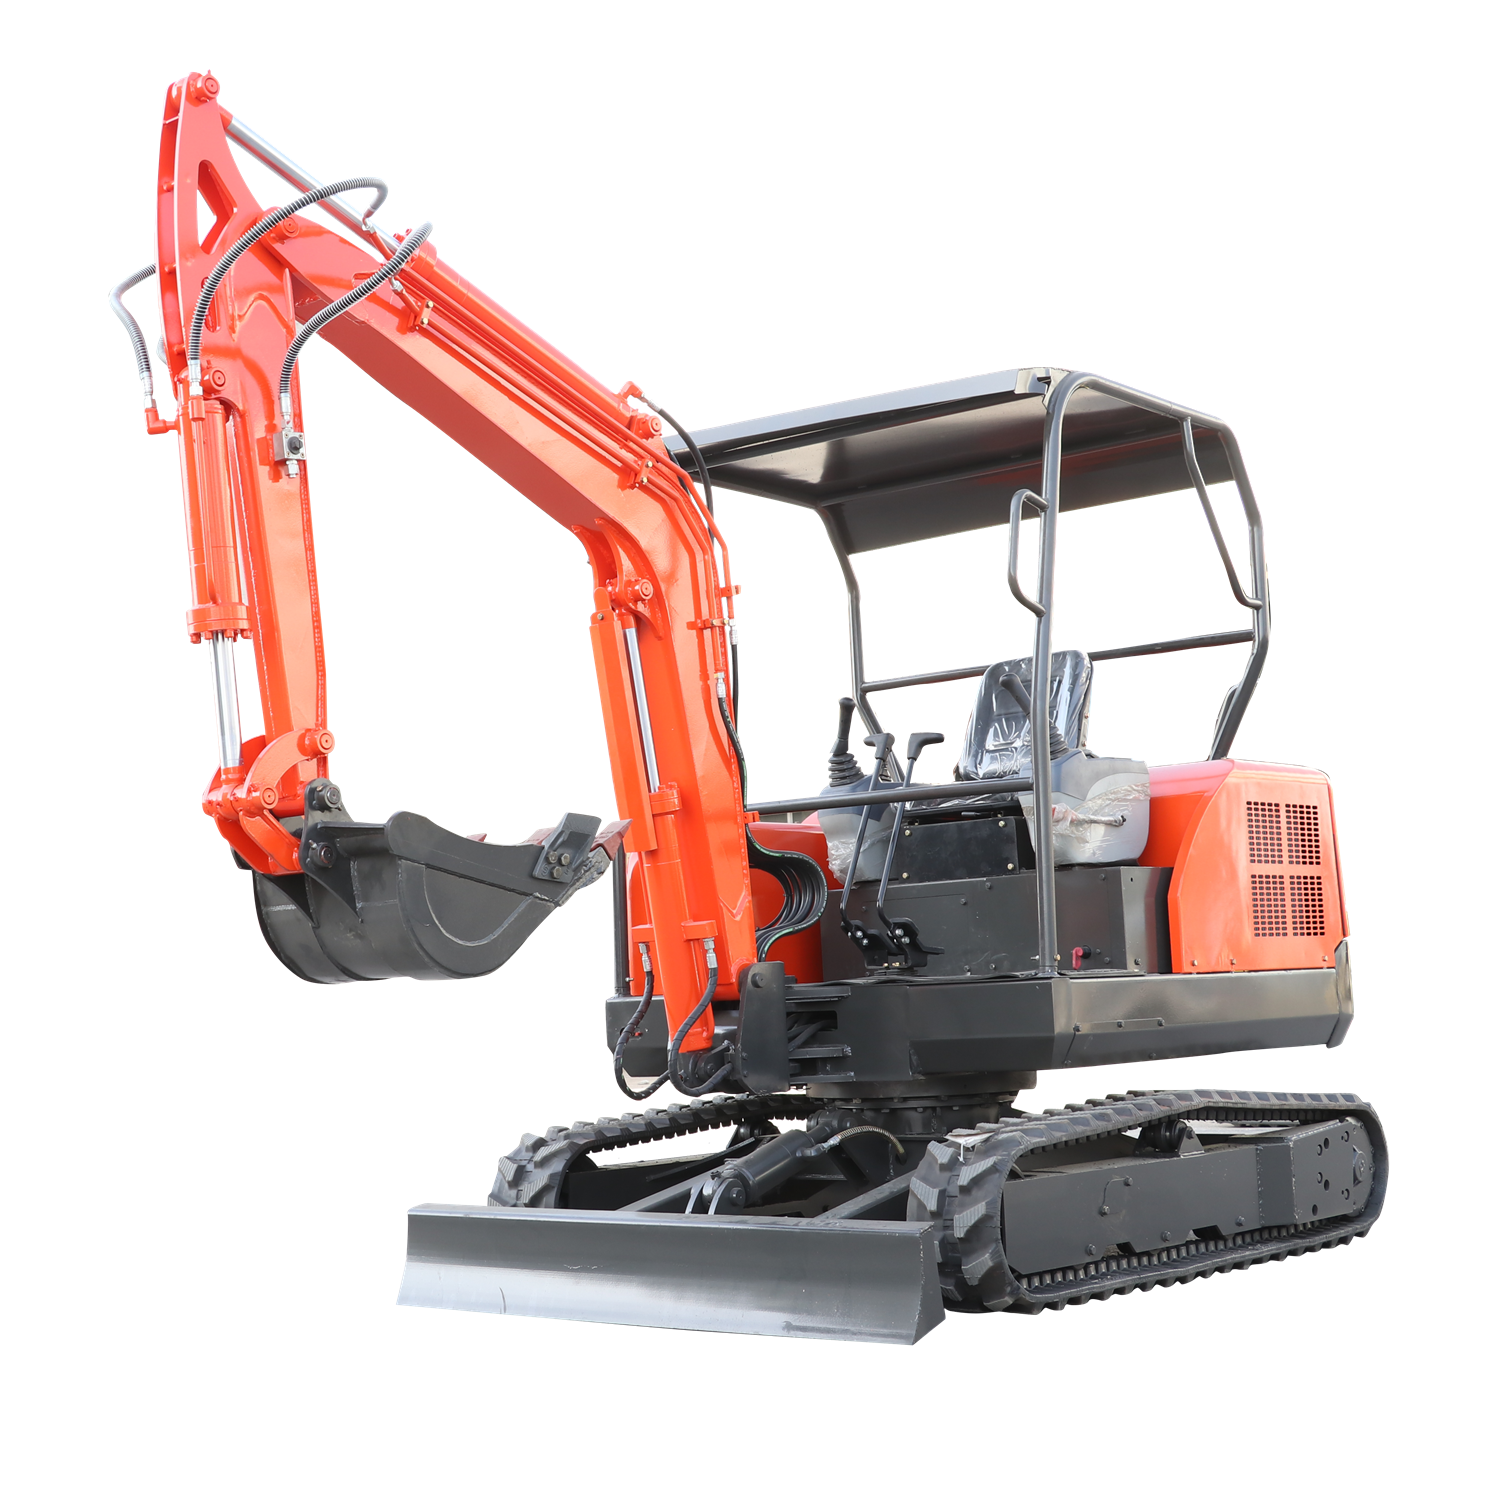 HX30A digging machine mini excavator